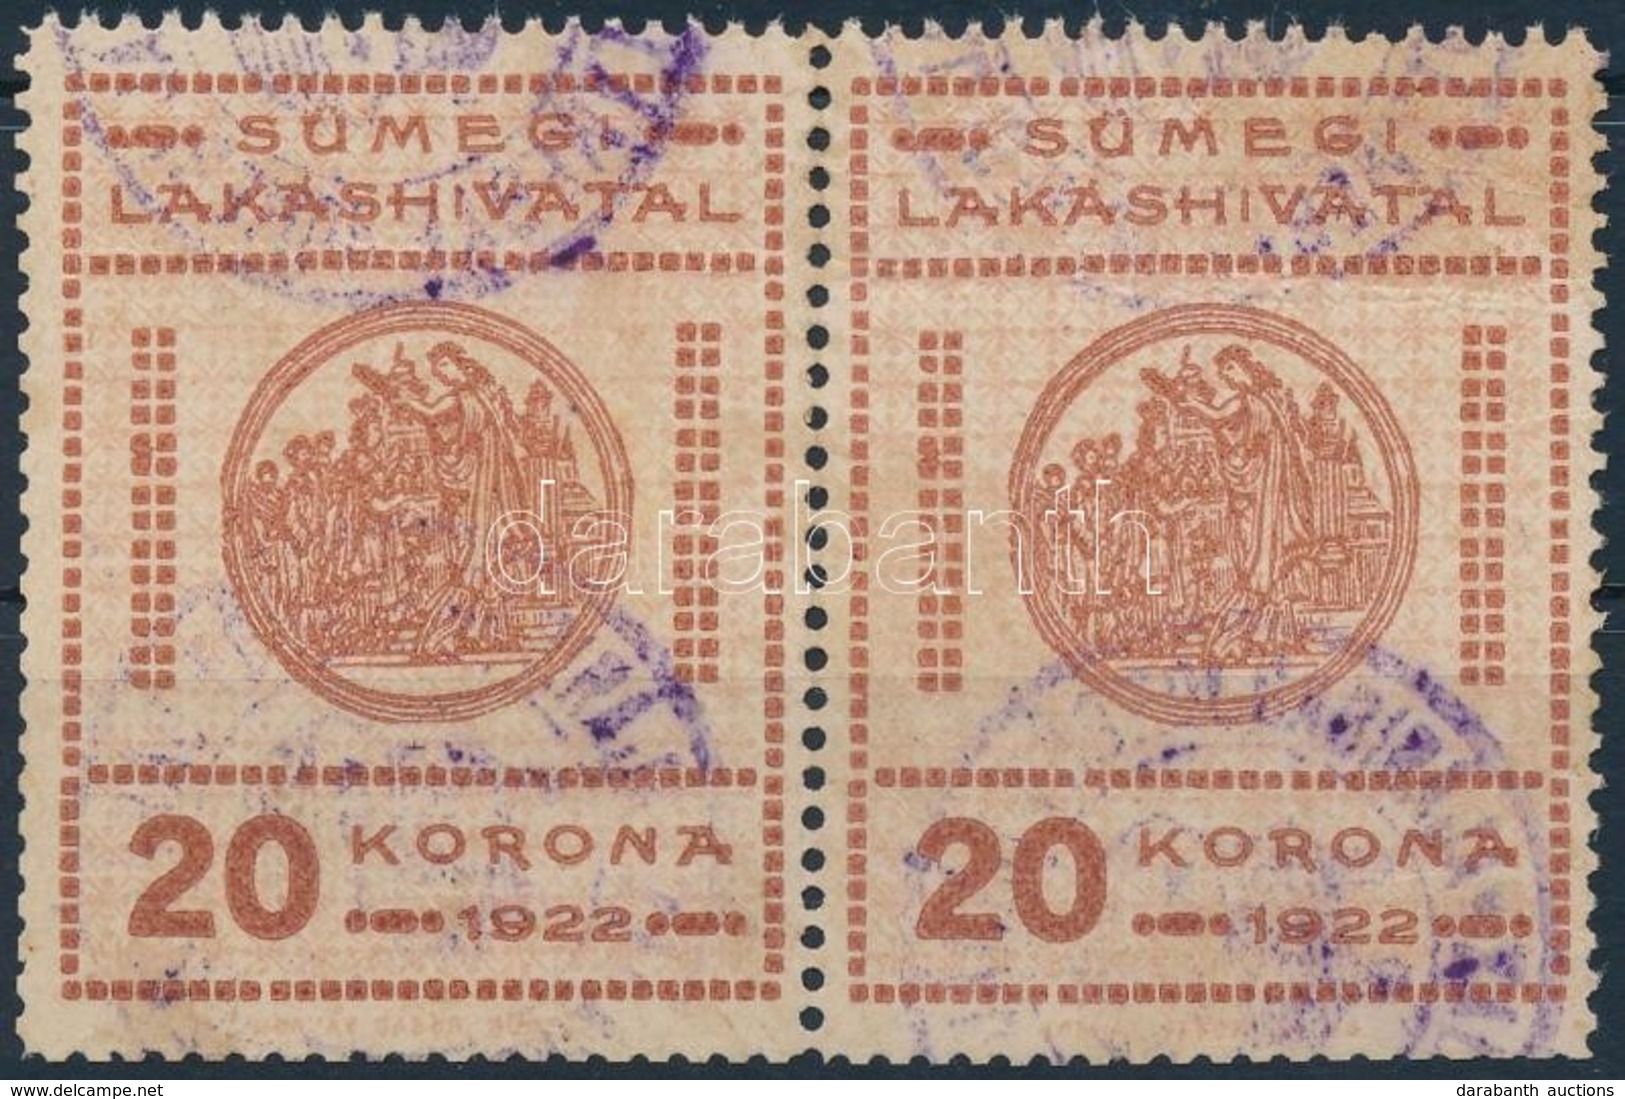 1922 Sümeg Városi Lakáshivatali Bélyeg 20K Pár (24.000) - Sin Clasificación